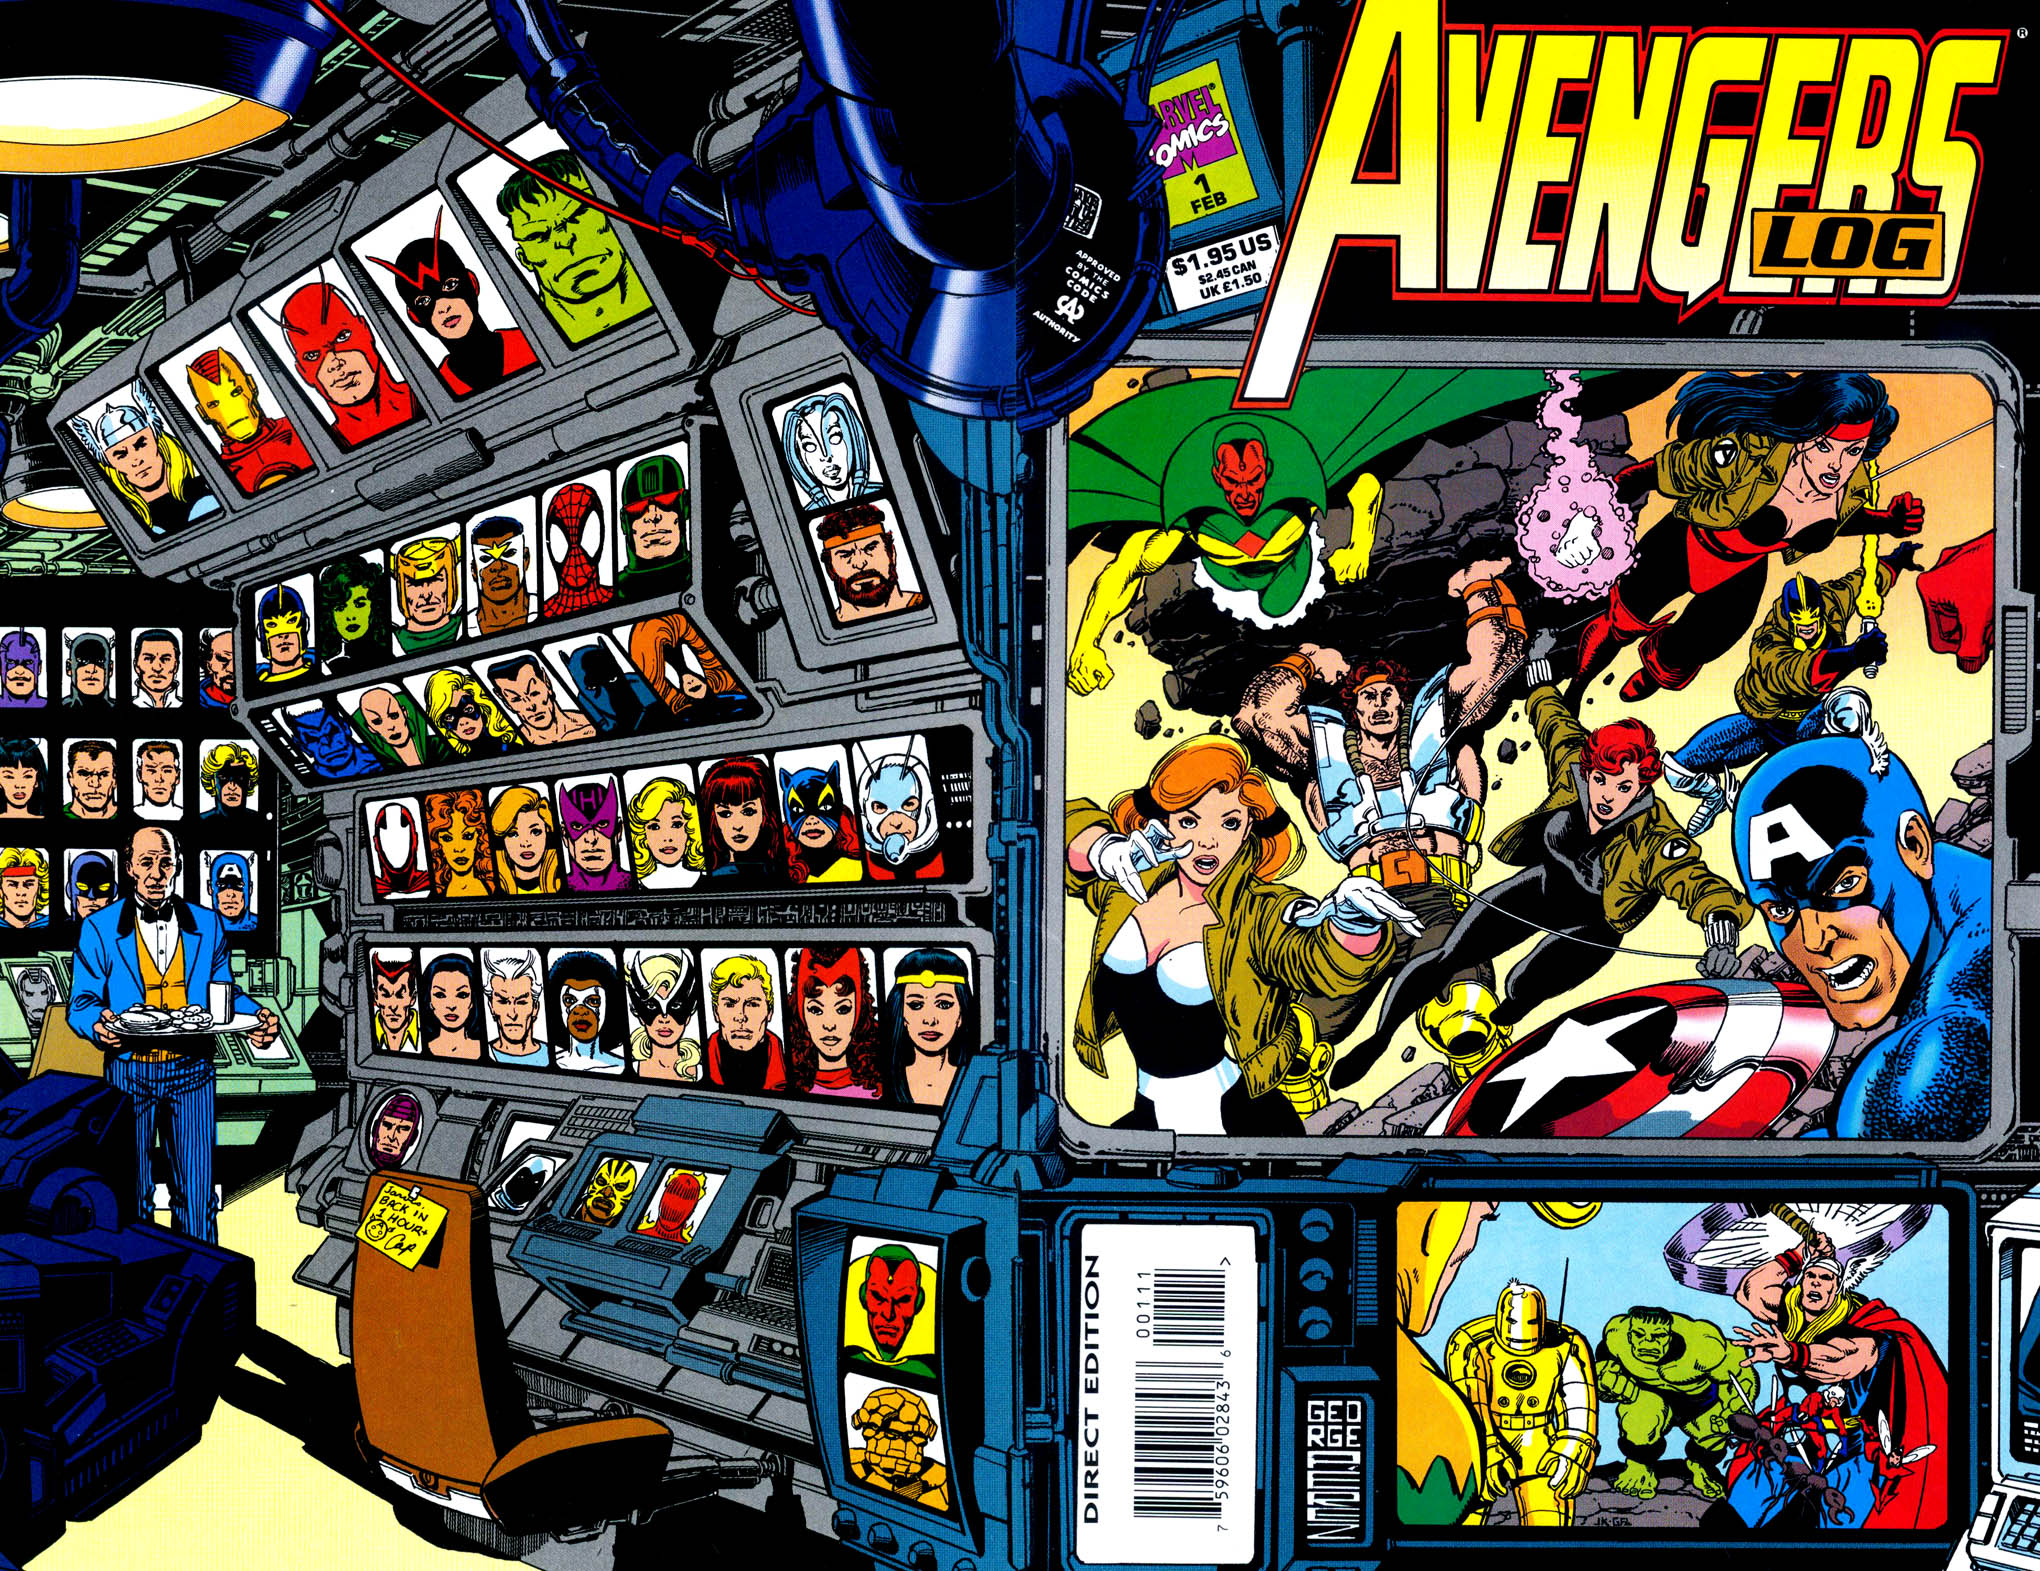 Read online The Avengers Log comic -  Issue # Full - 1